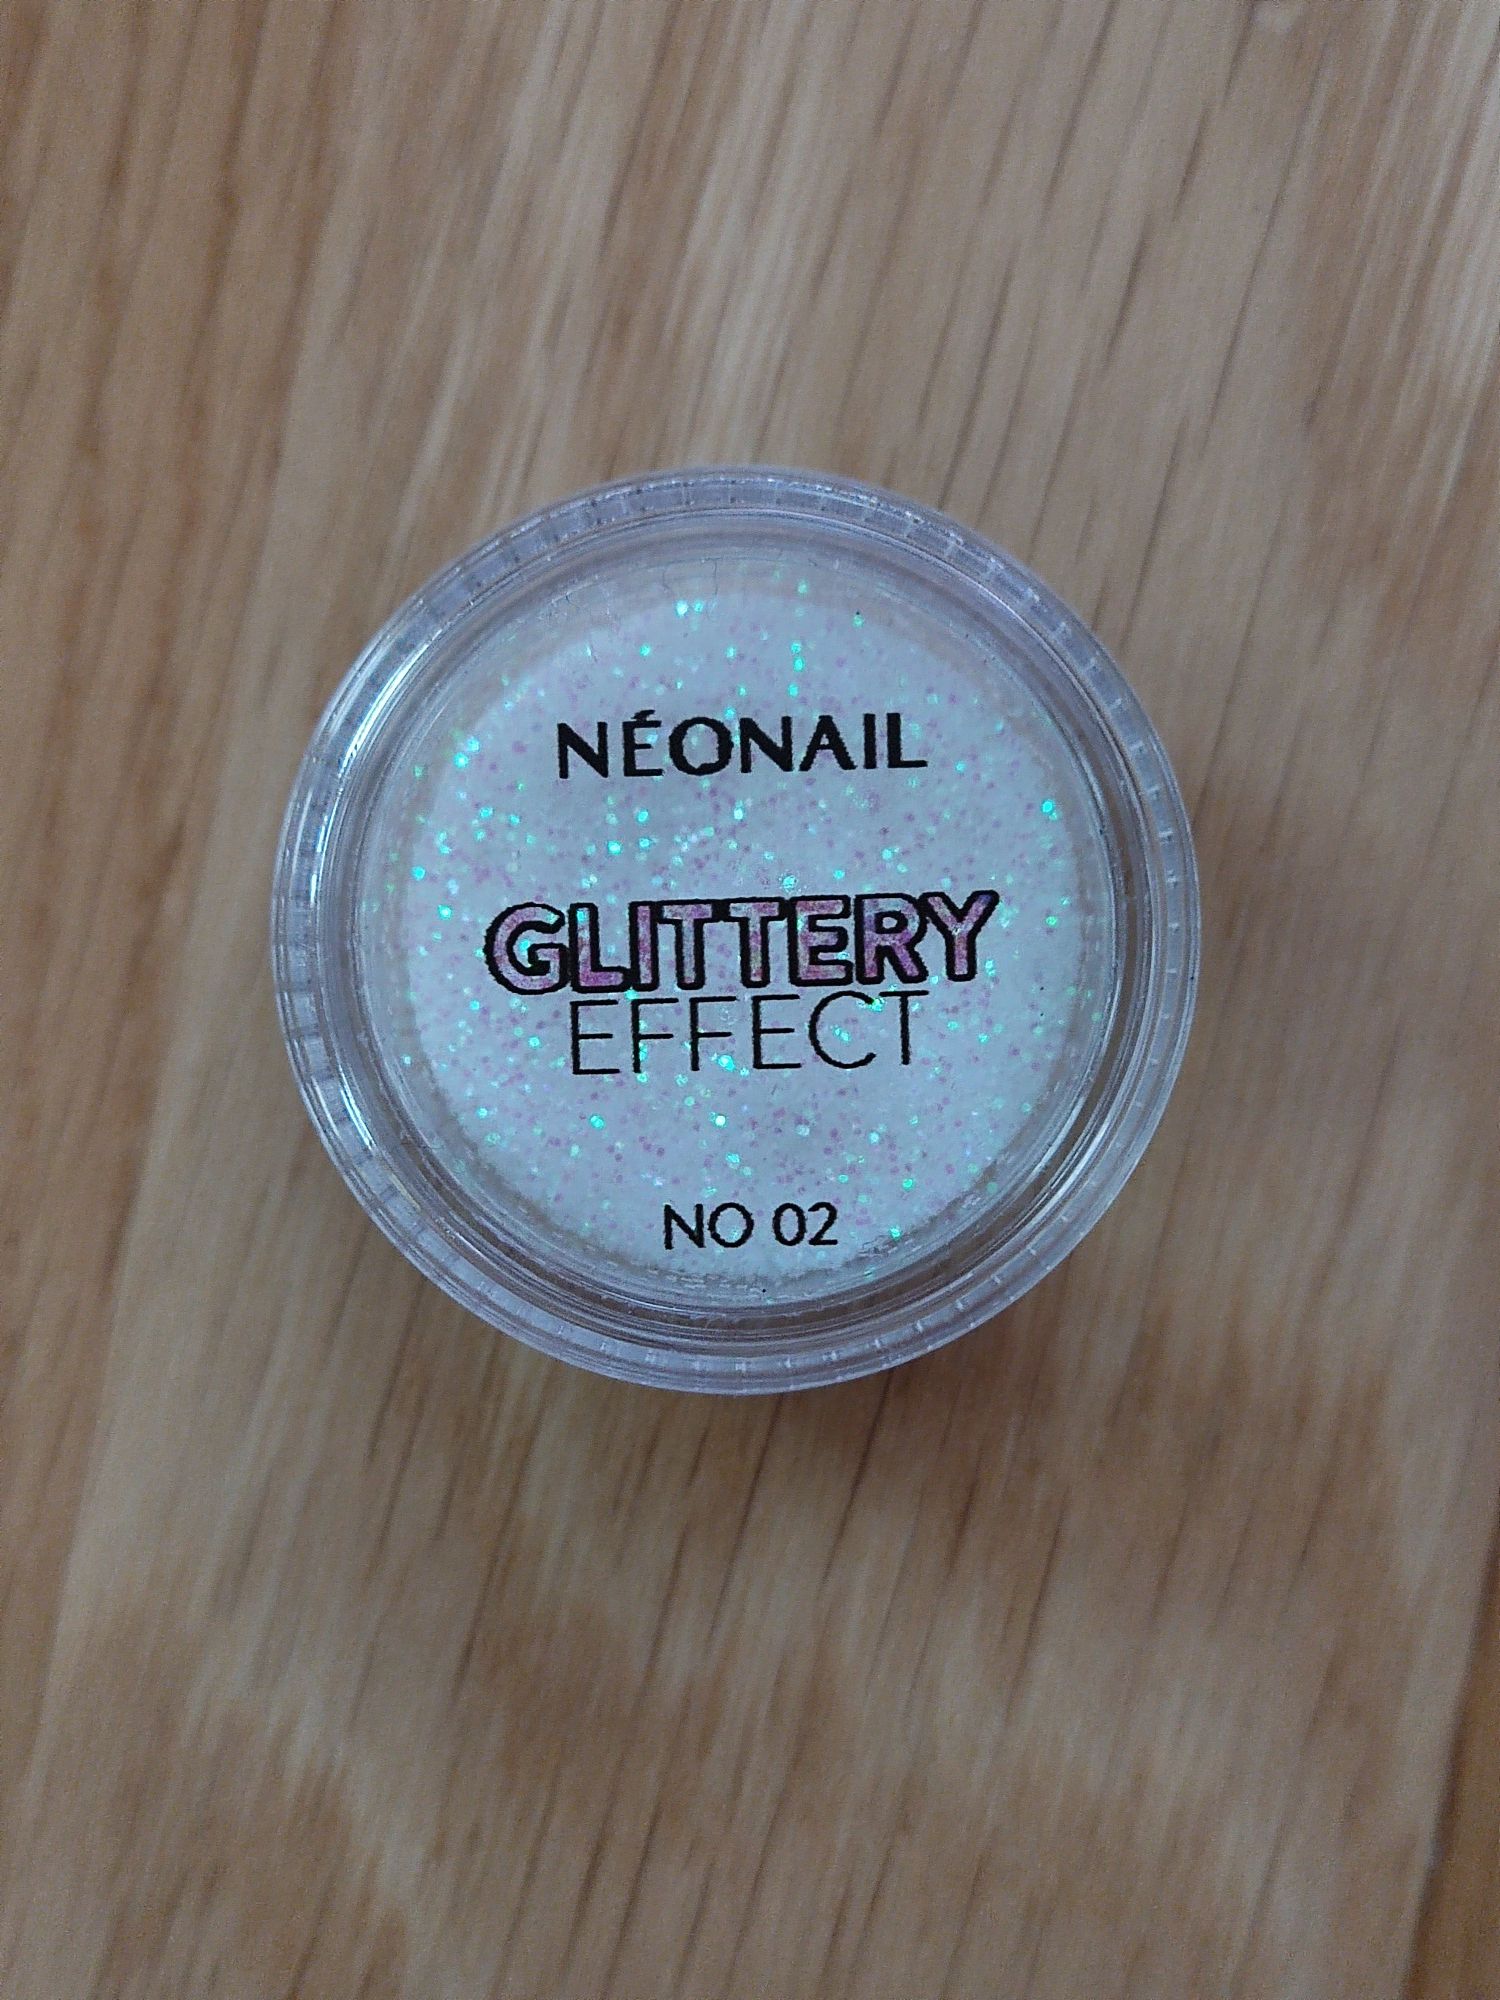 Nowy pyłek do paznokci neonail glittery effect 02 manicure ozdoby